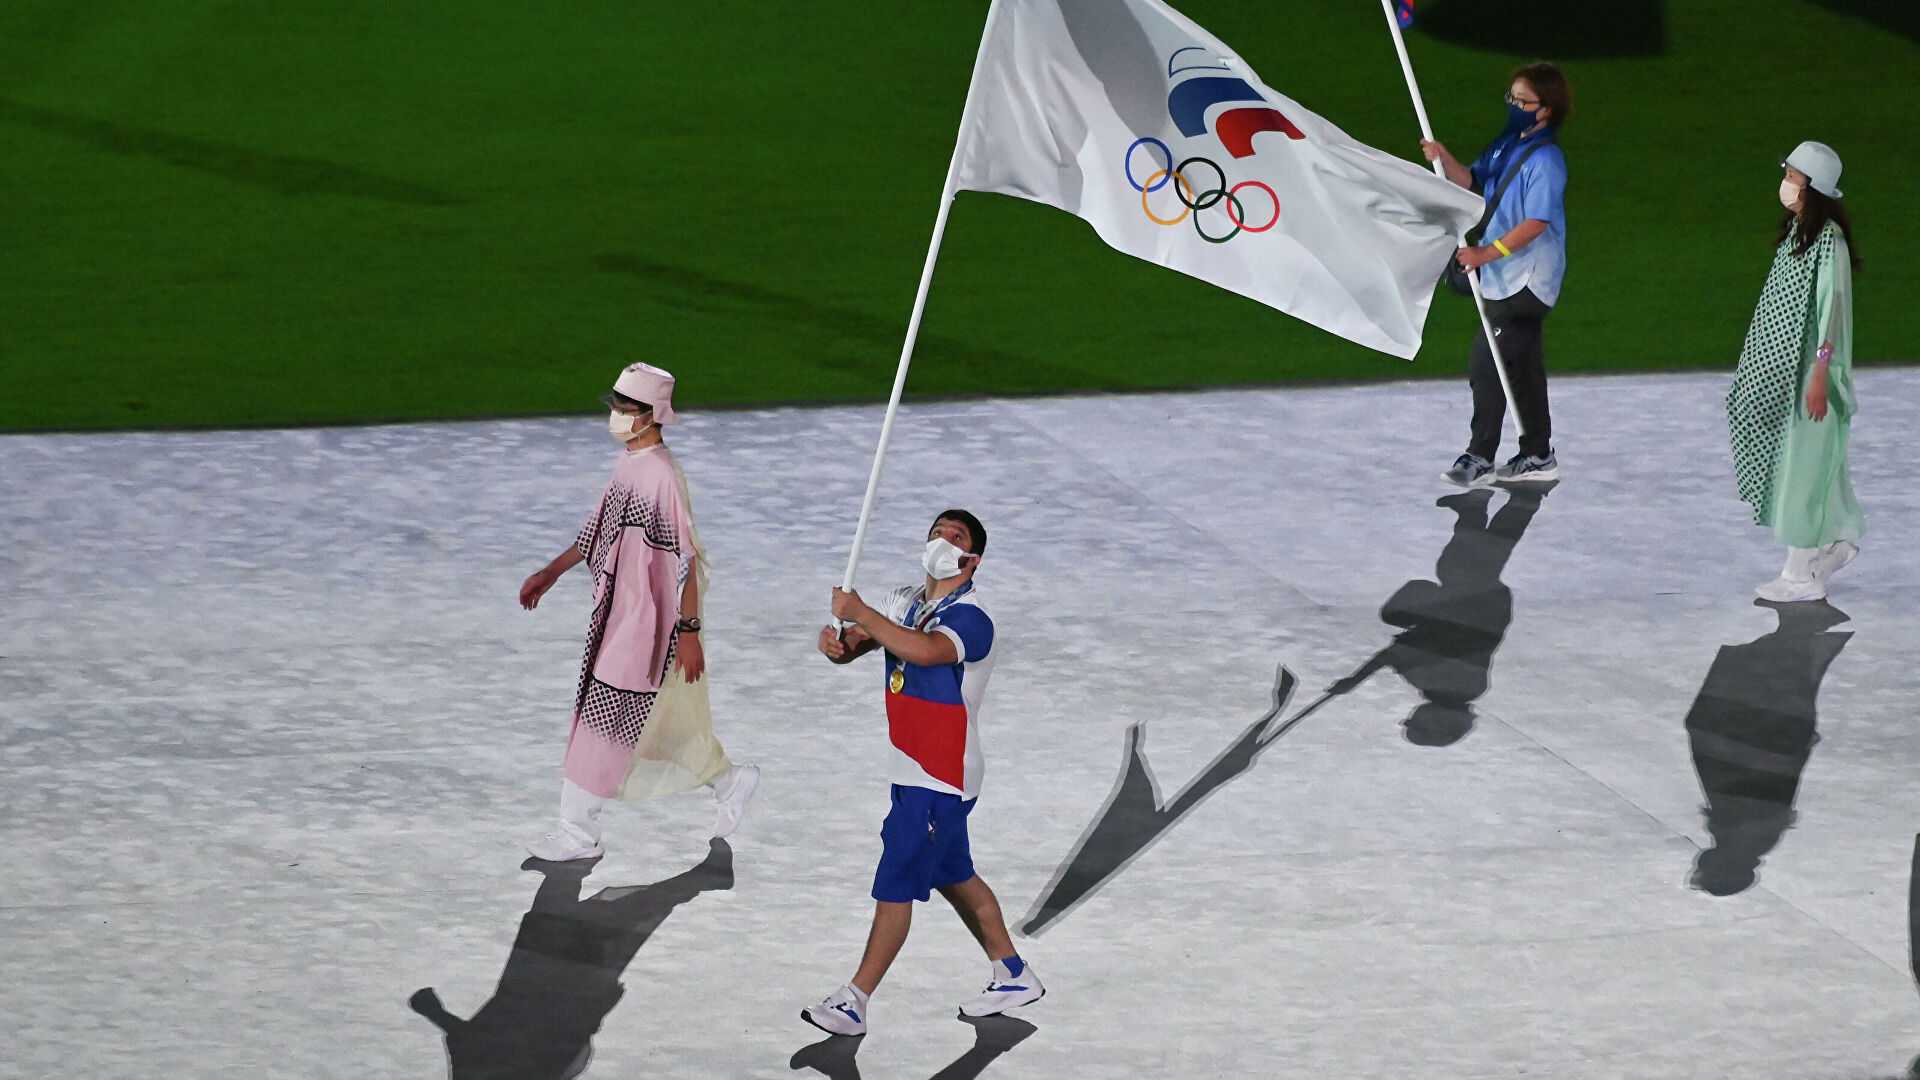 Началась церемония закрытия Олимпийских игр 2020 в Японии